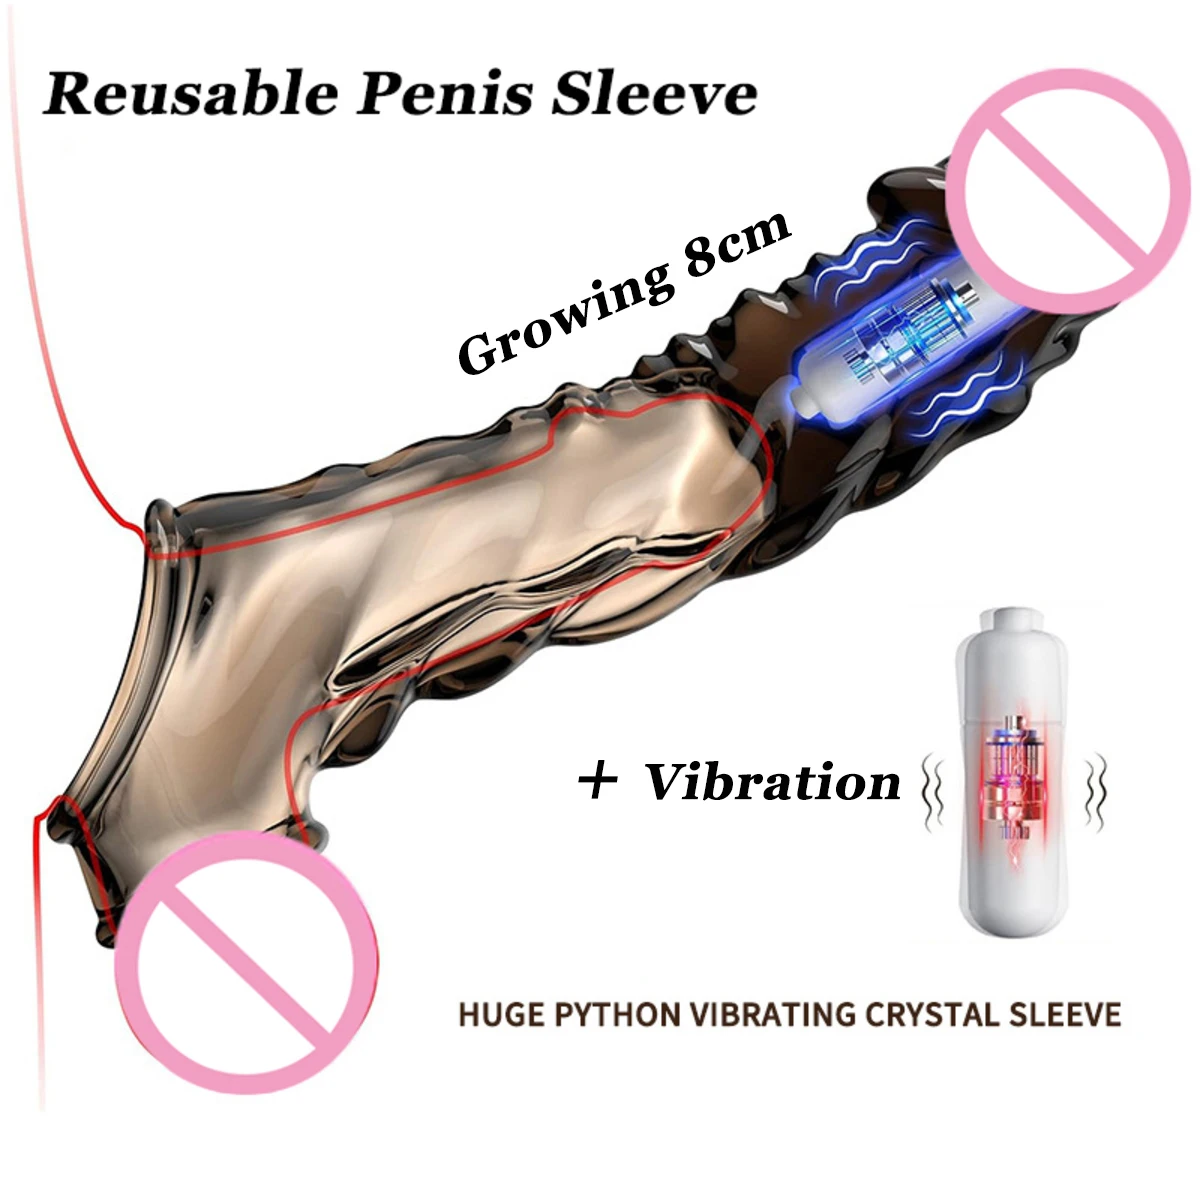 Zdjęcie produktu z kategorii wibratorów pchających - Reusable Penis Sleeve with Vibrator